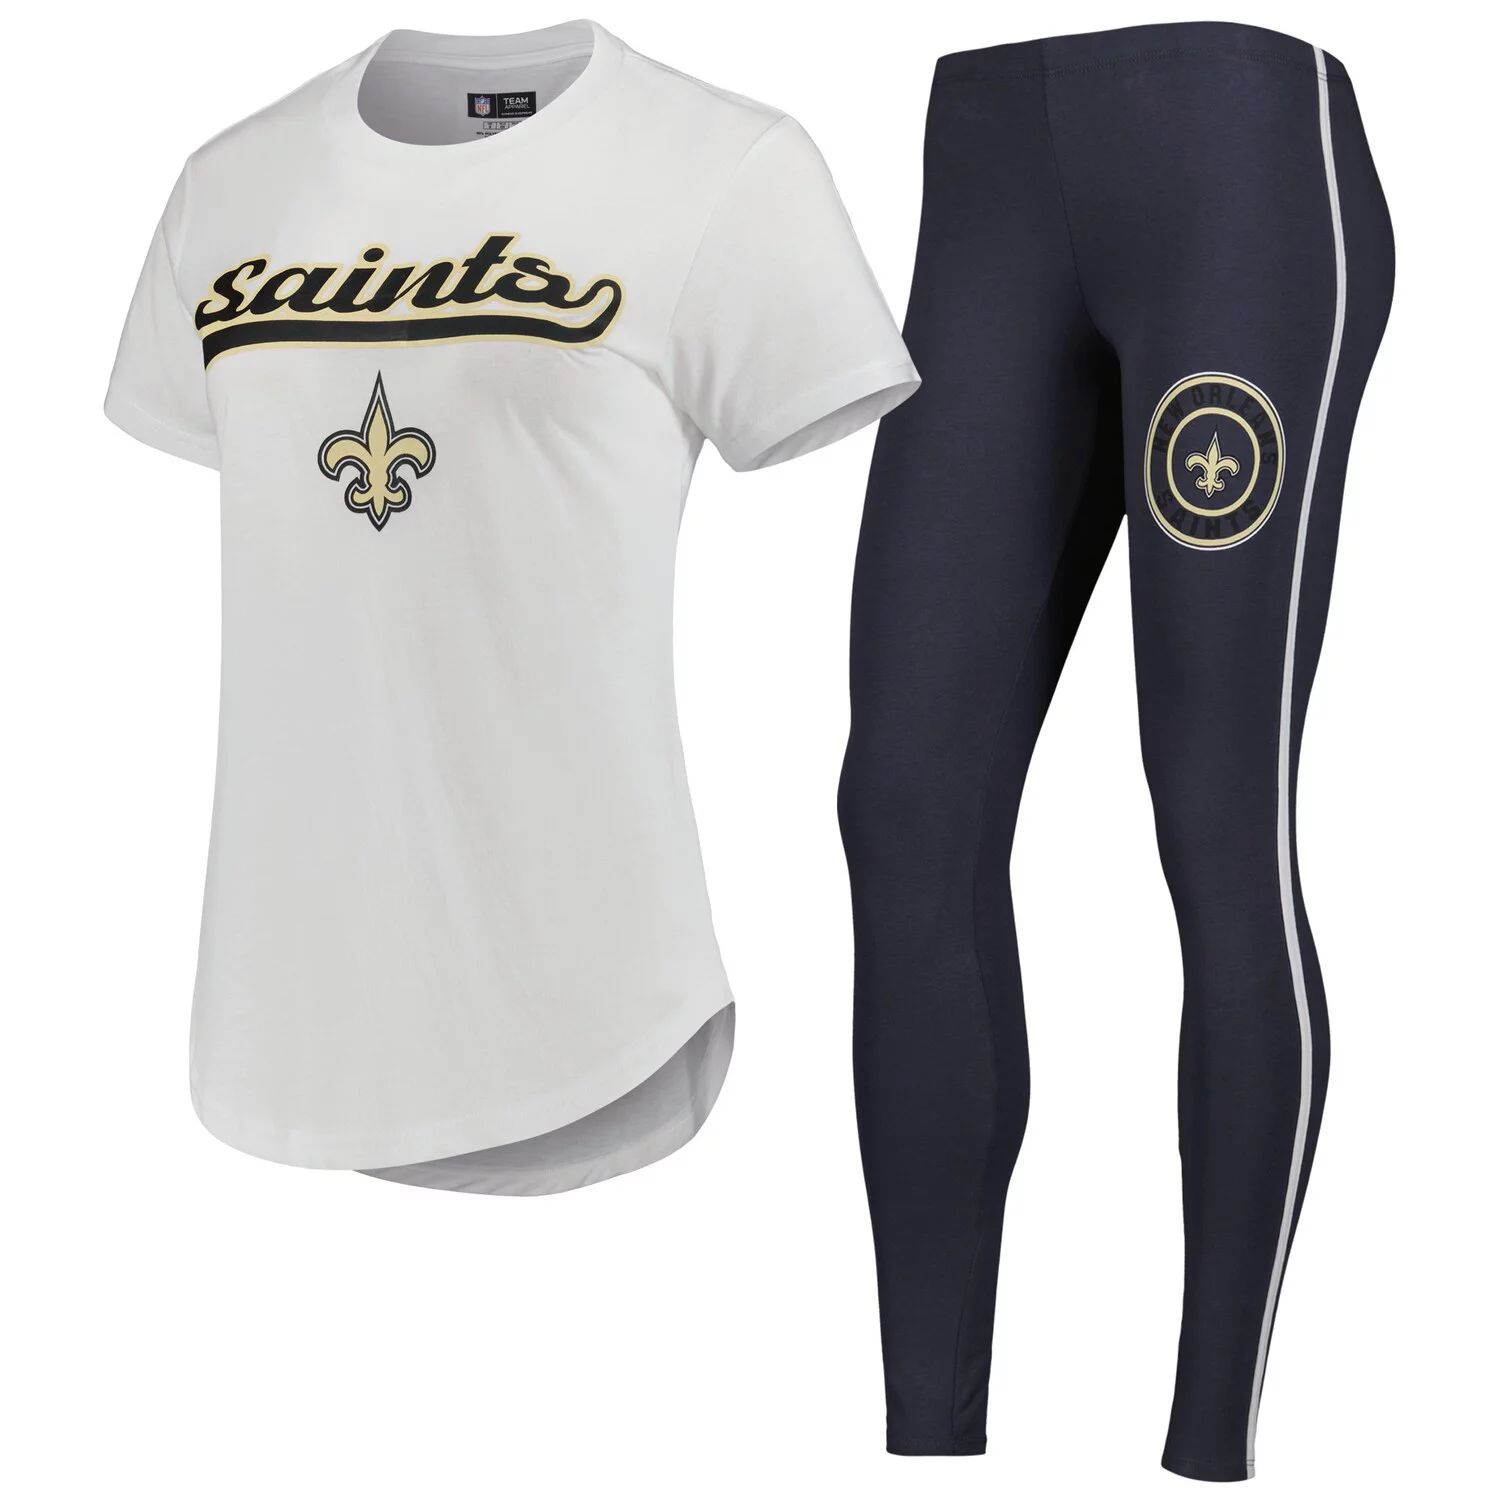 

Женская футболка Concepts Sport, белая/темно-серая футболка и леггинсы New Orleans Saints Sonata для сна, Белый